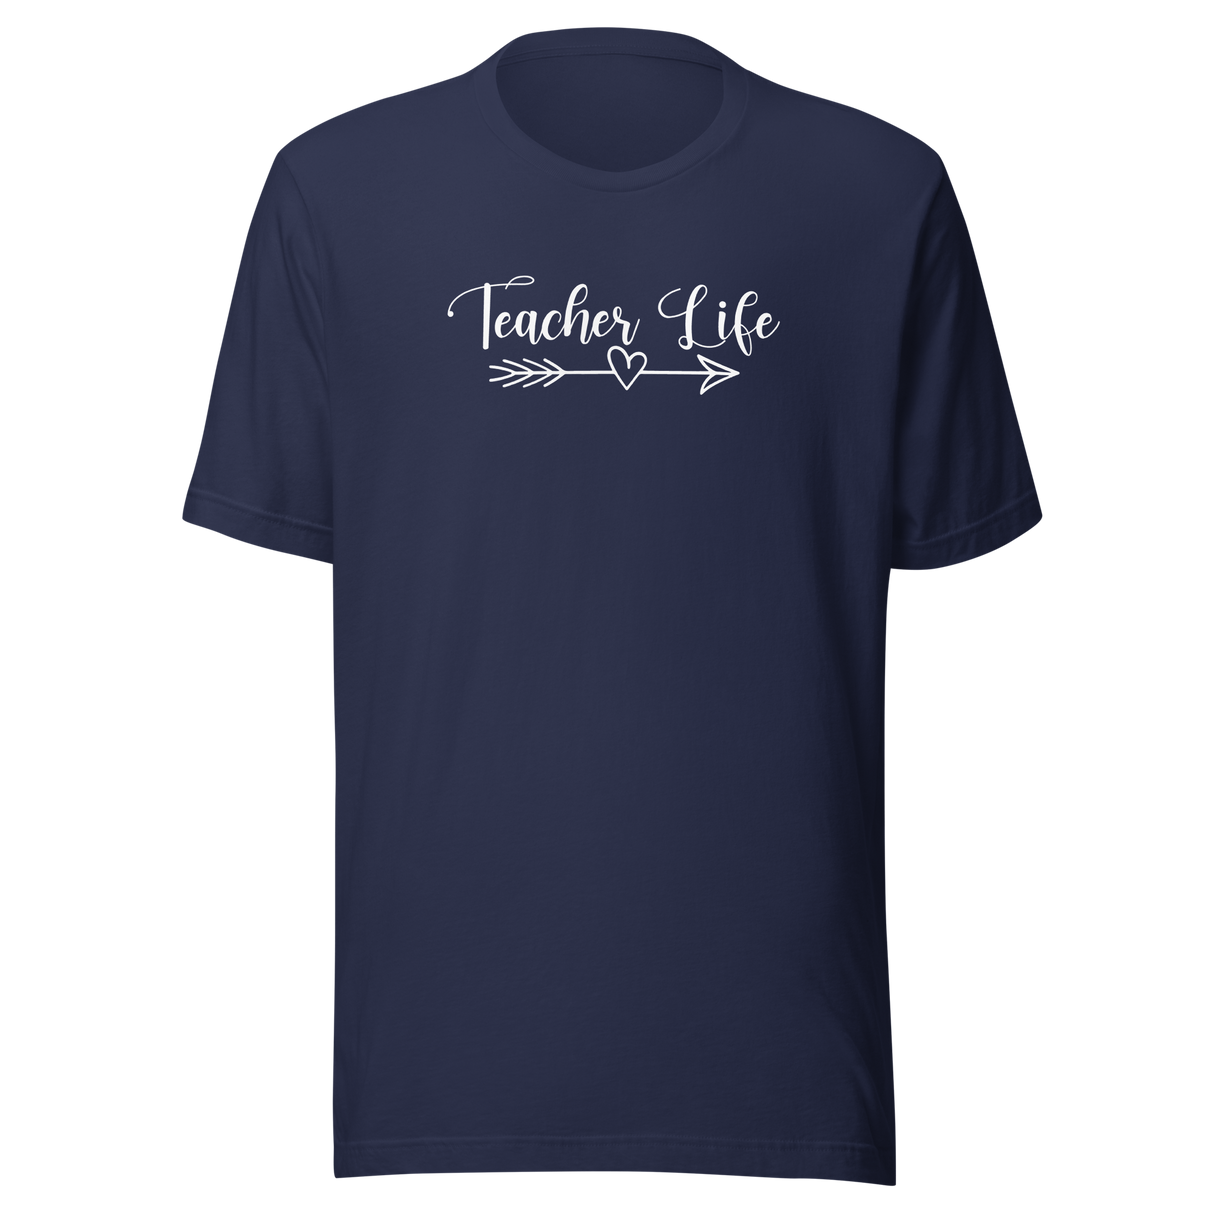 teacher-life-teacher-tee-teaching-t-shirt-school-tee-education-t-shirt-career-tee#color_navy